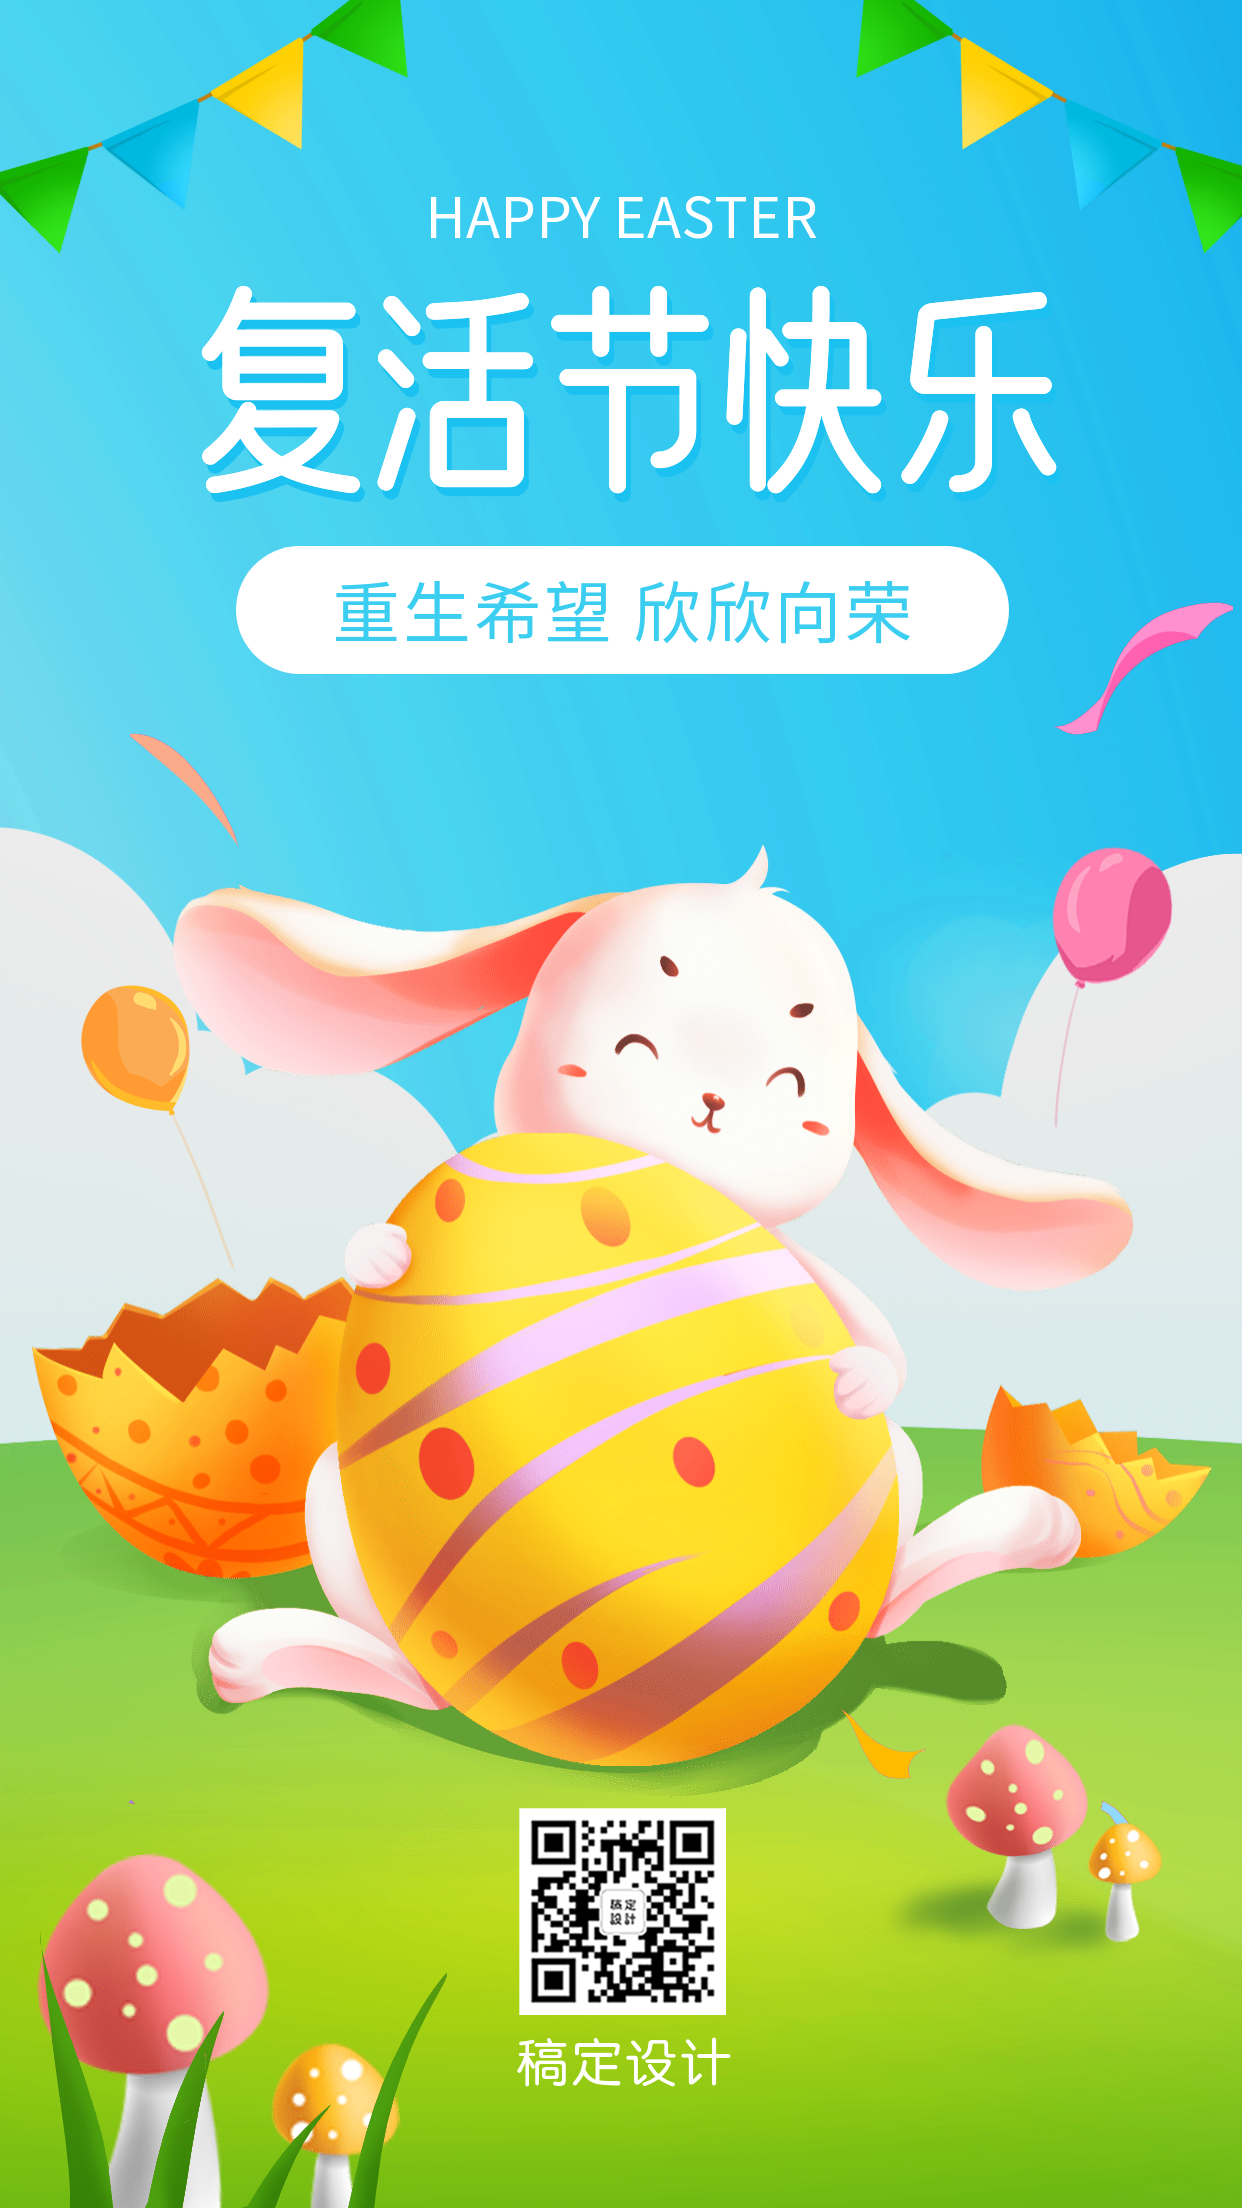 复活节彩蛋节日祝福手机海报